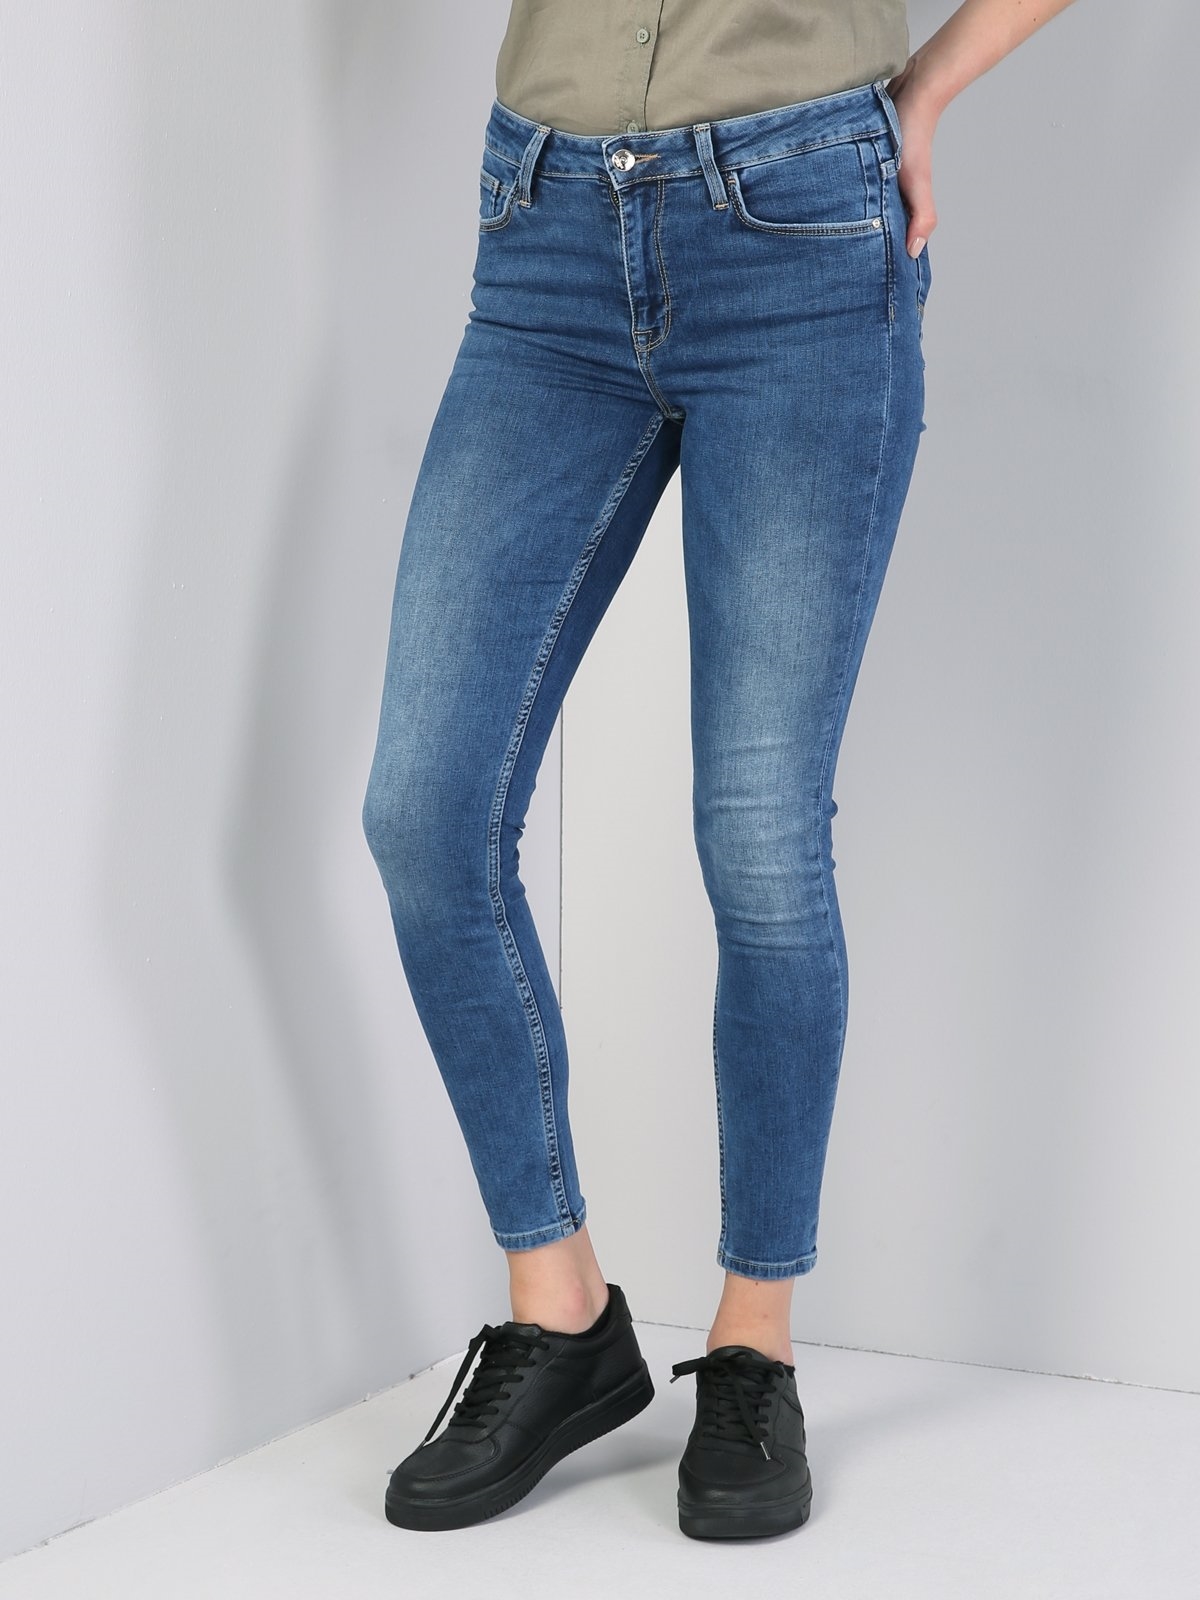 Colins 760 Dıana Yüksek Bel Dar Paça Super Slim Fit Mavi Kadın Jean Pantolon. 5